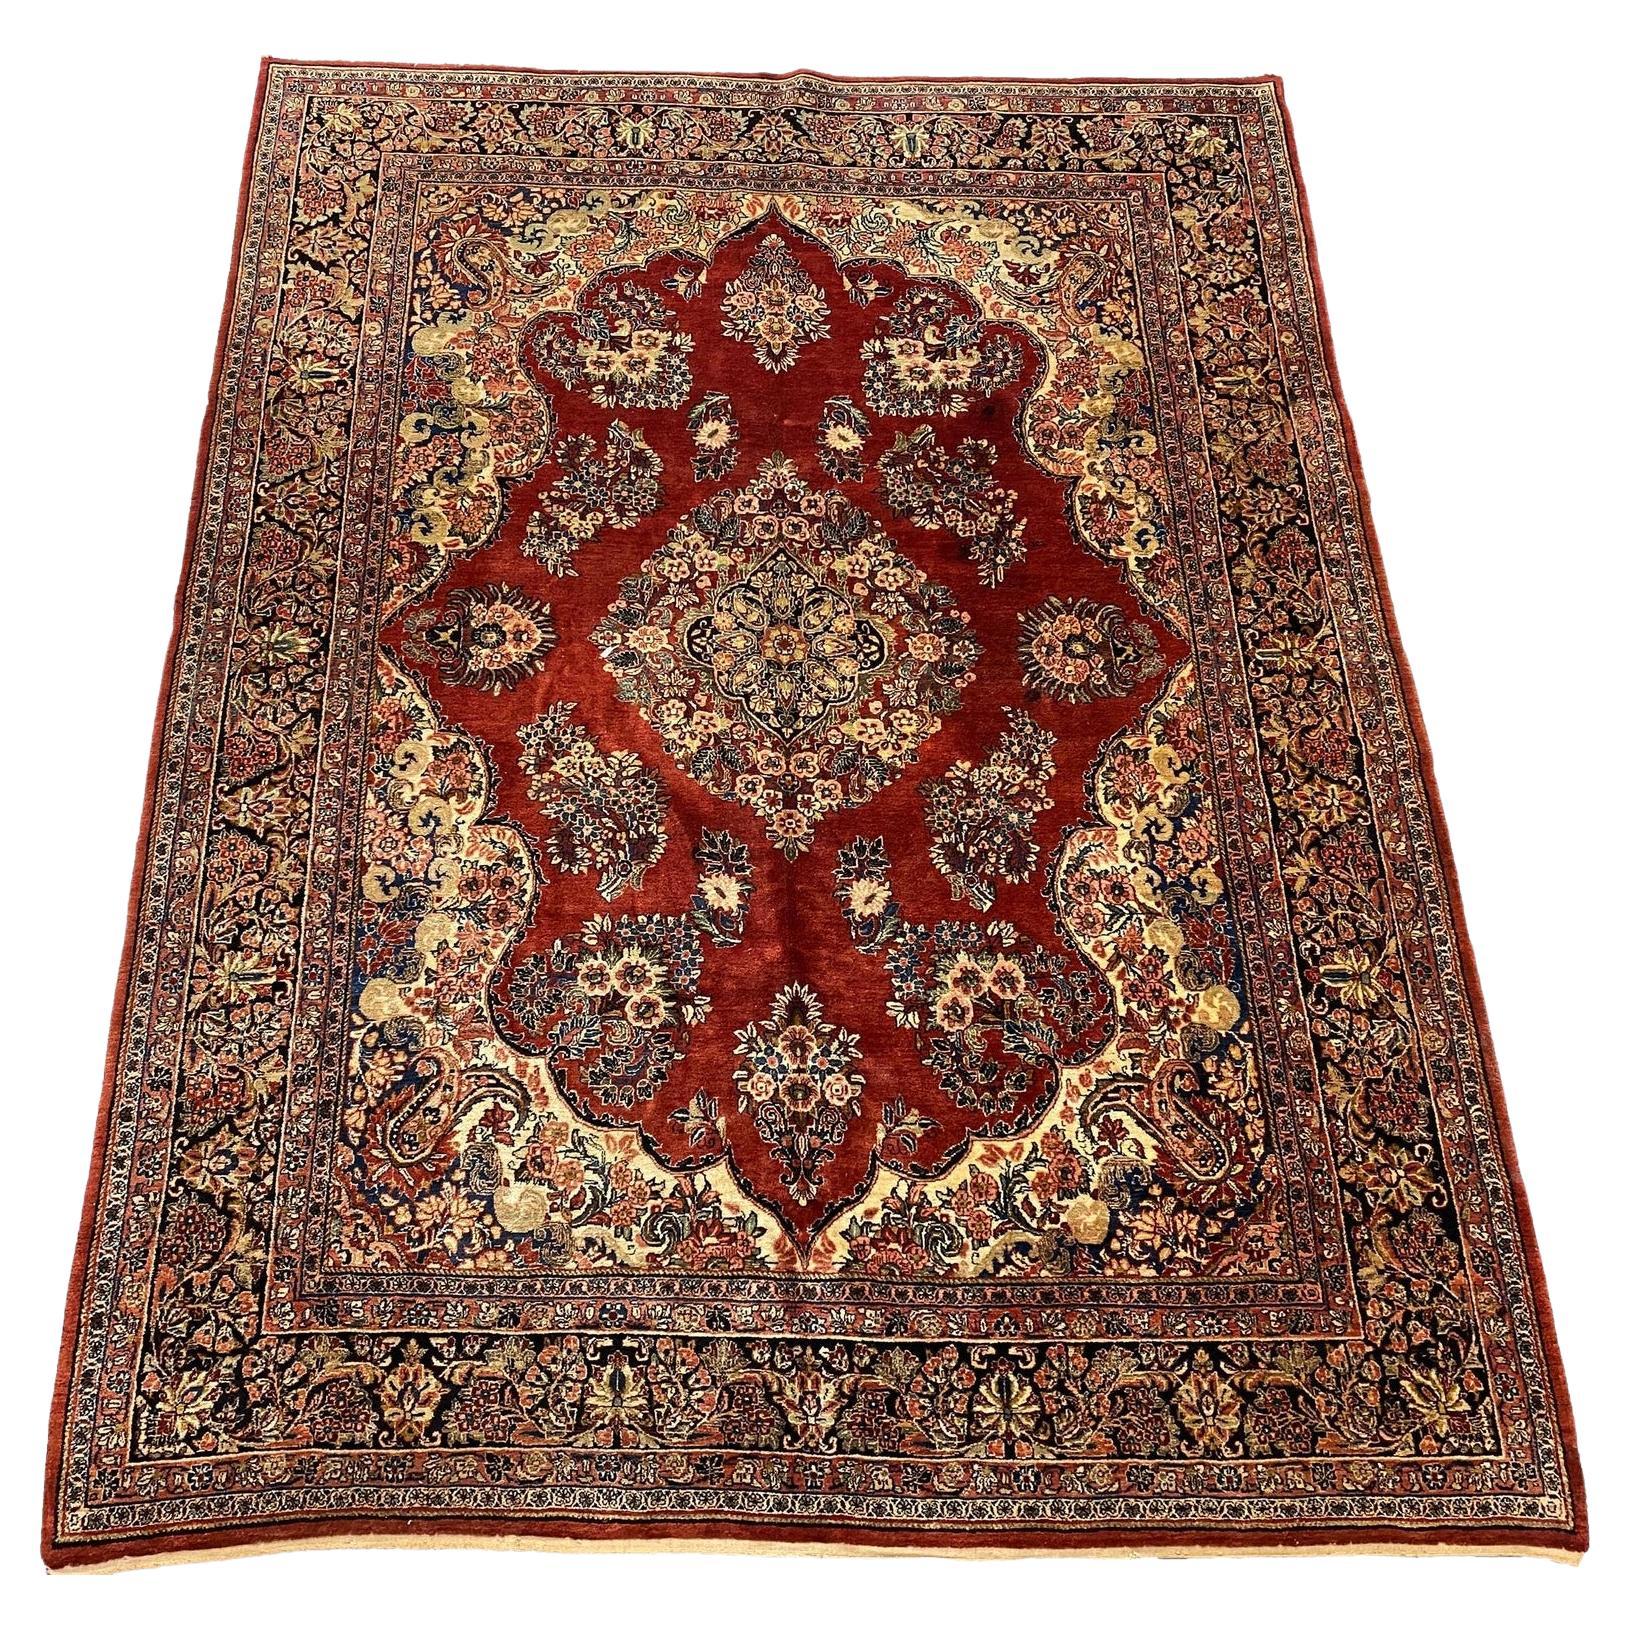  Persischer Sarouk-Teppich im Vintage-Stil - 12' x 9'